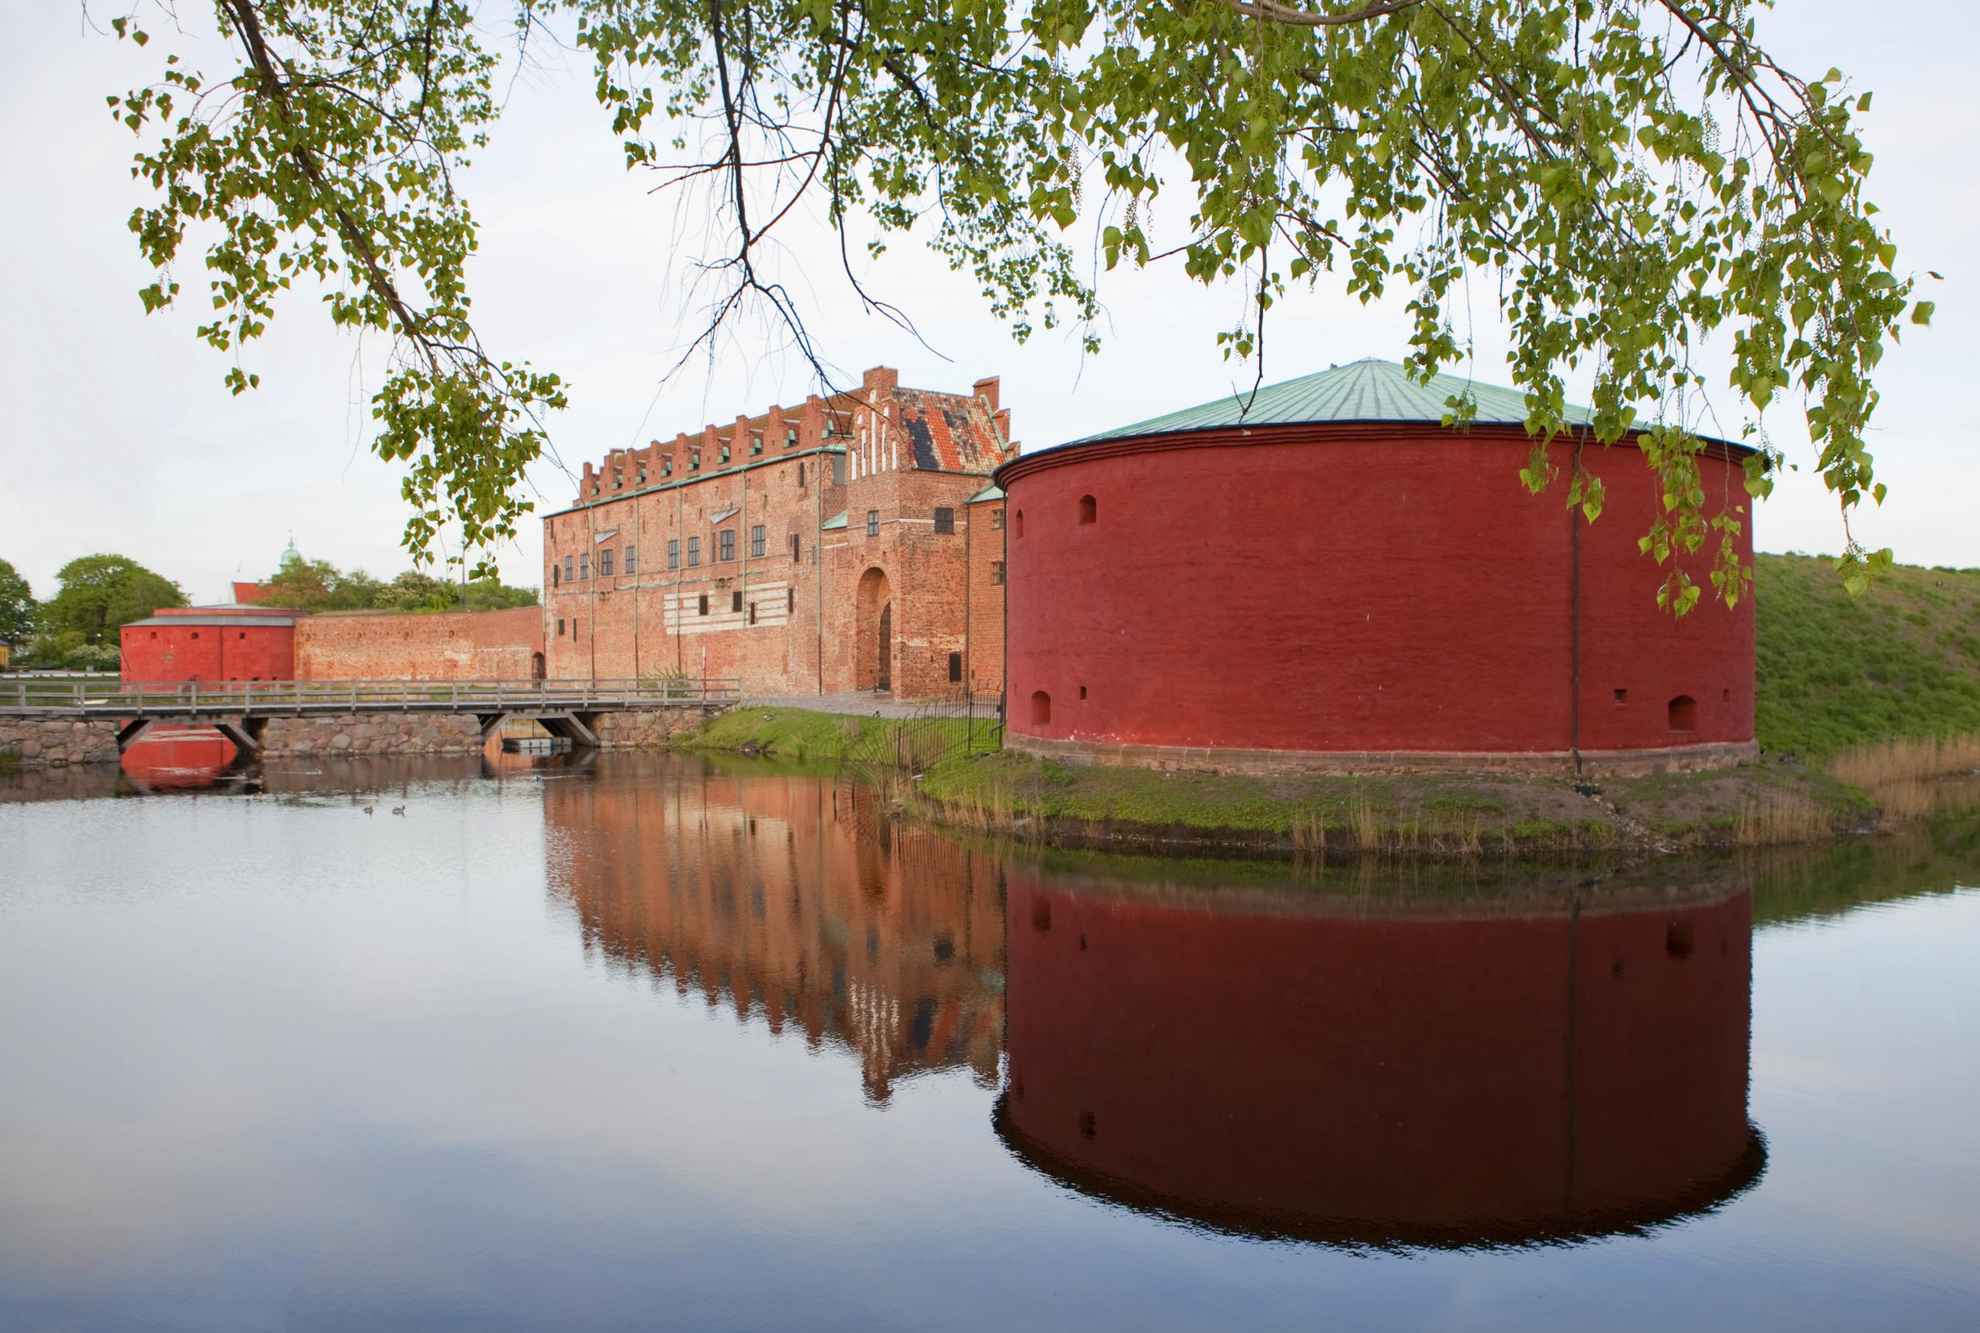 Kasteel Malmöhus is een grote ronde toren naast een bakstenen gebouw, omgeven door water. Een andere ronde toren aan de andere kant op de achtergrond. Groene bladeren op de voorgrond.